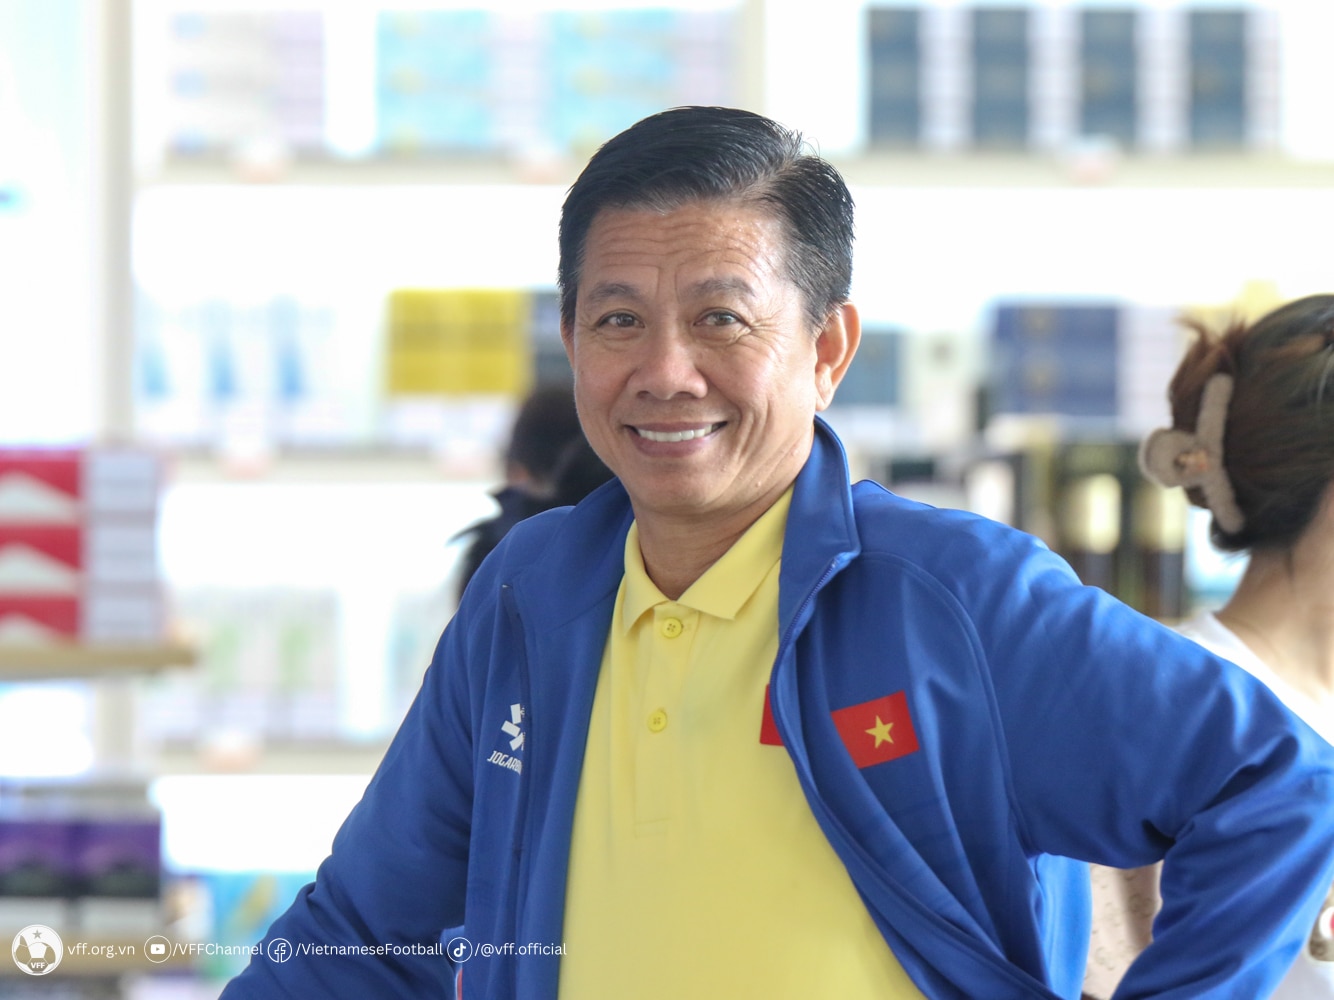 El entrenador Hoang Anh Tuan se mostró satisfecho con el desempeño de los jugadores